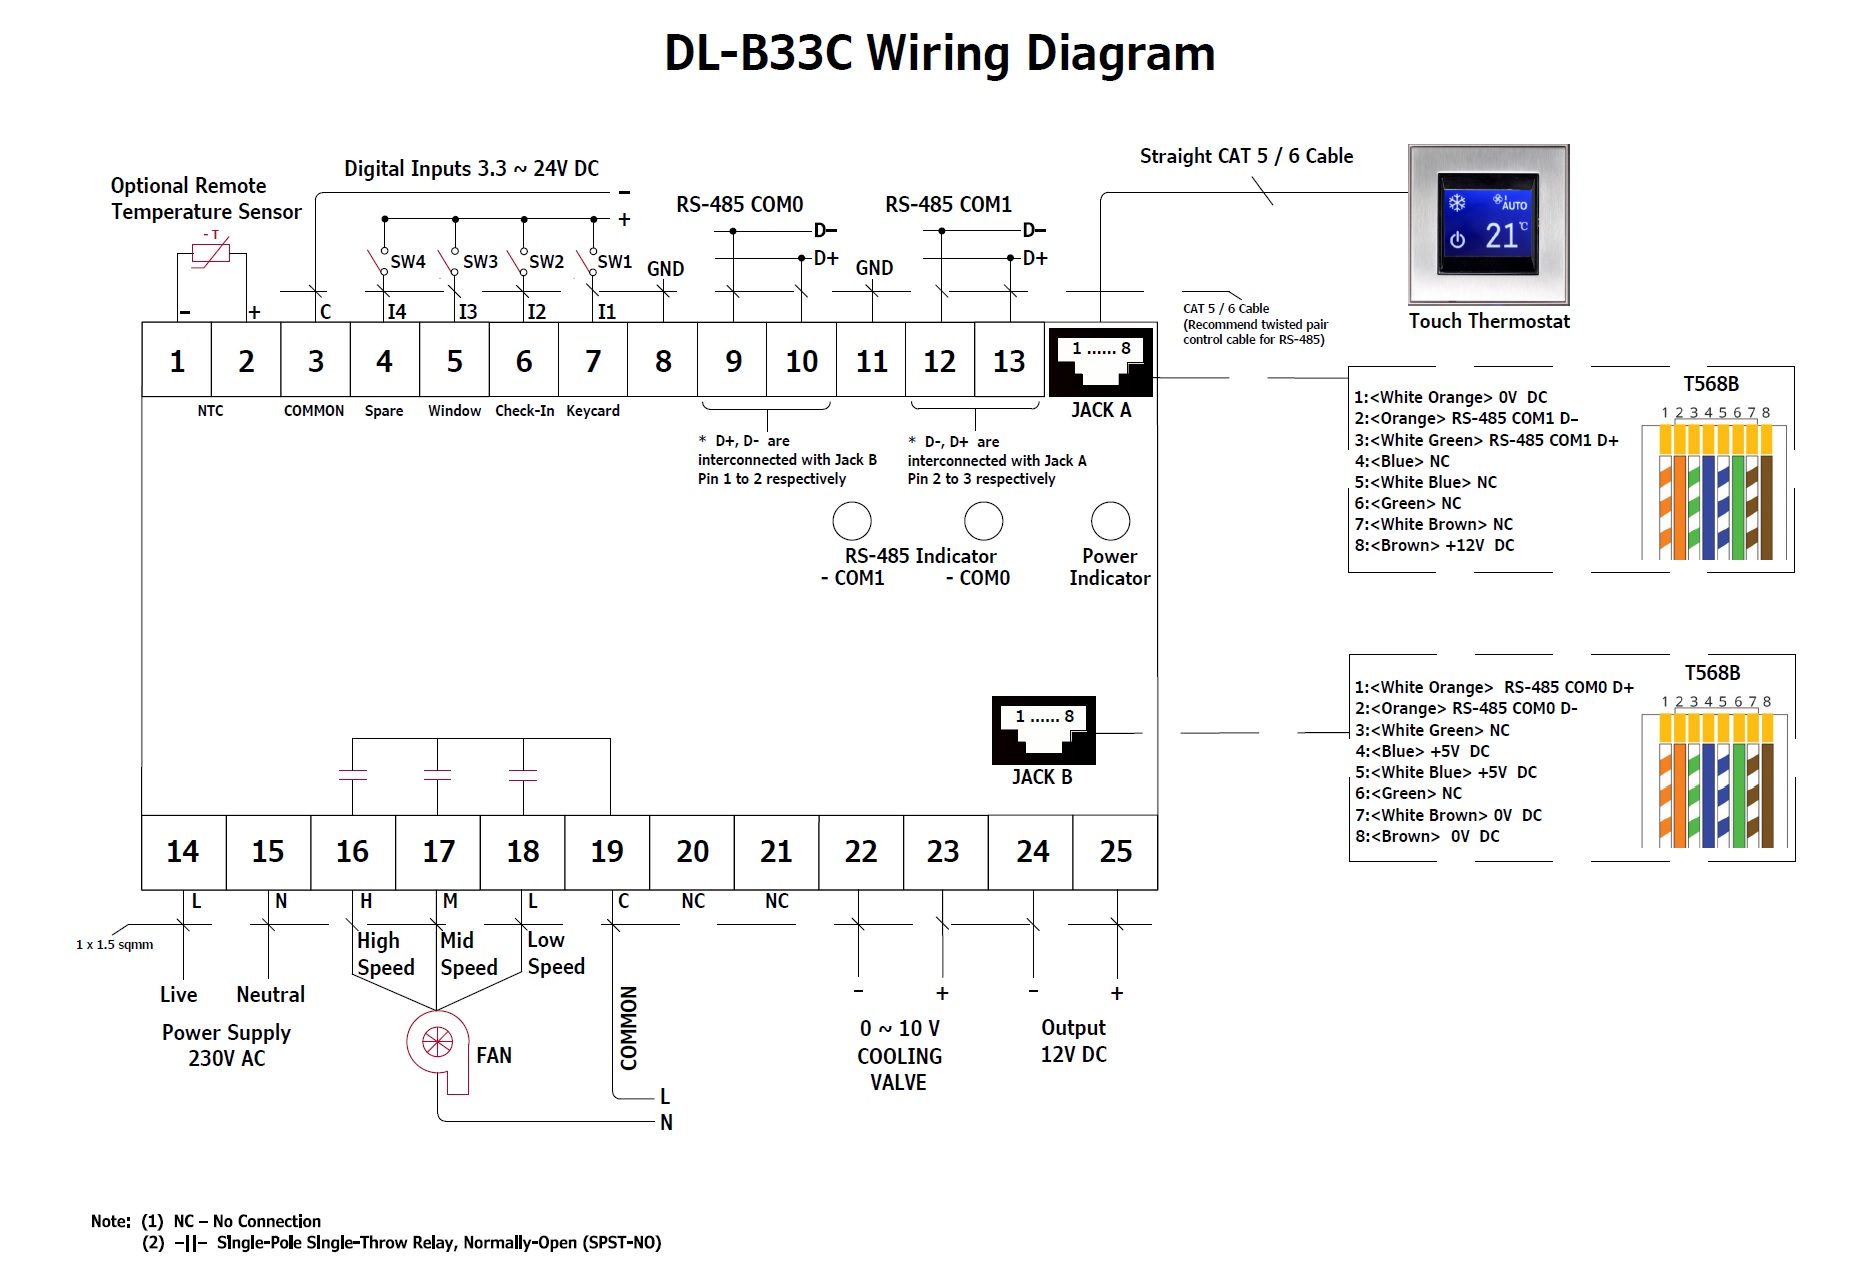 DL-B33C Wiring Diagram